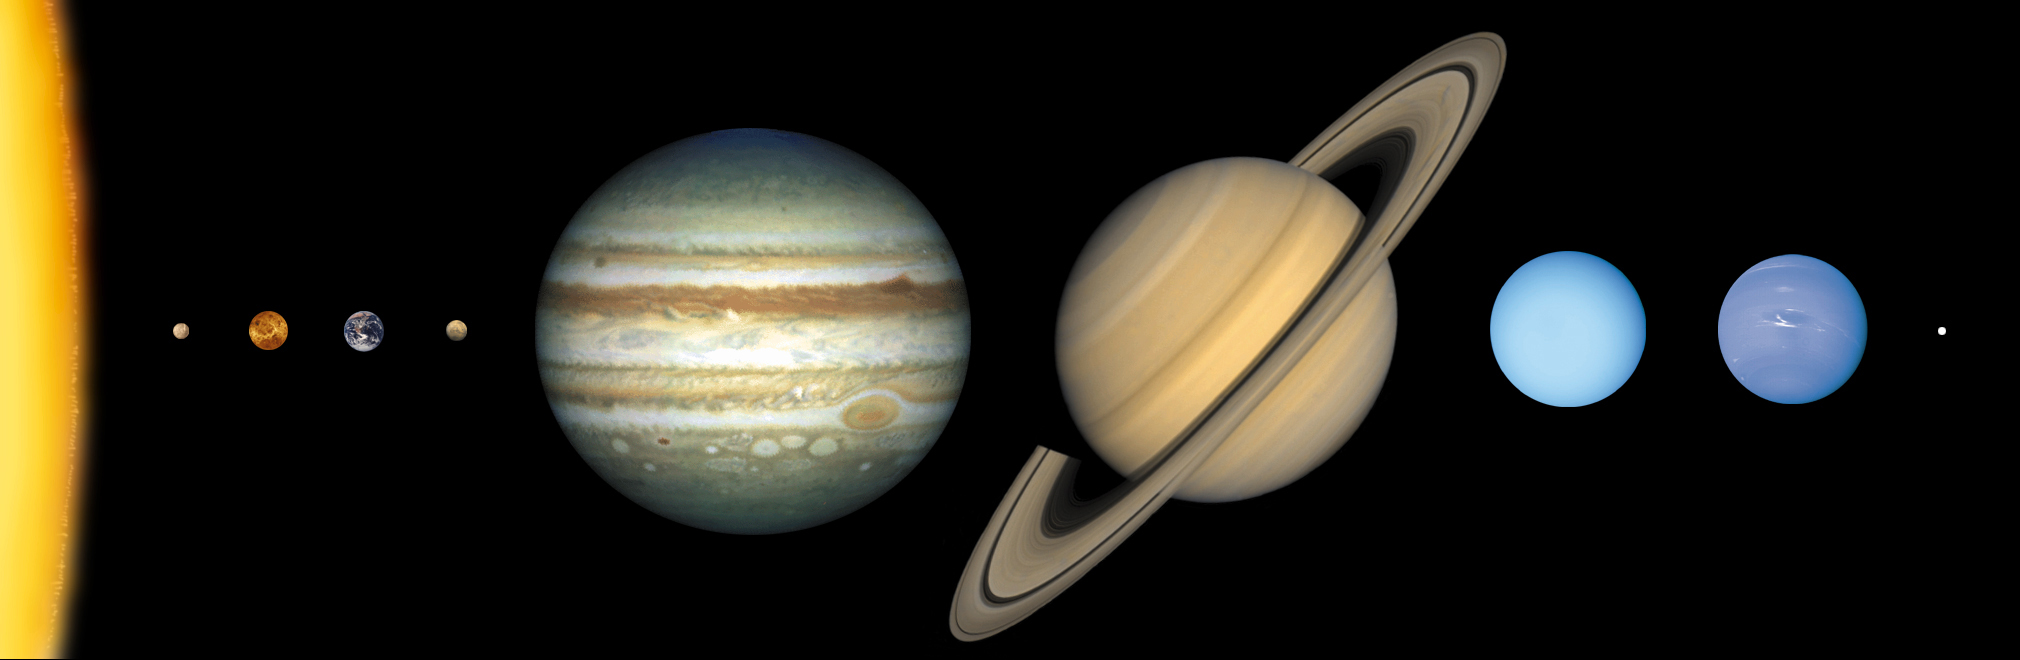 Jupiter Size Comparison